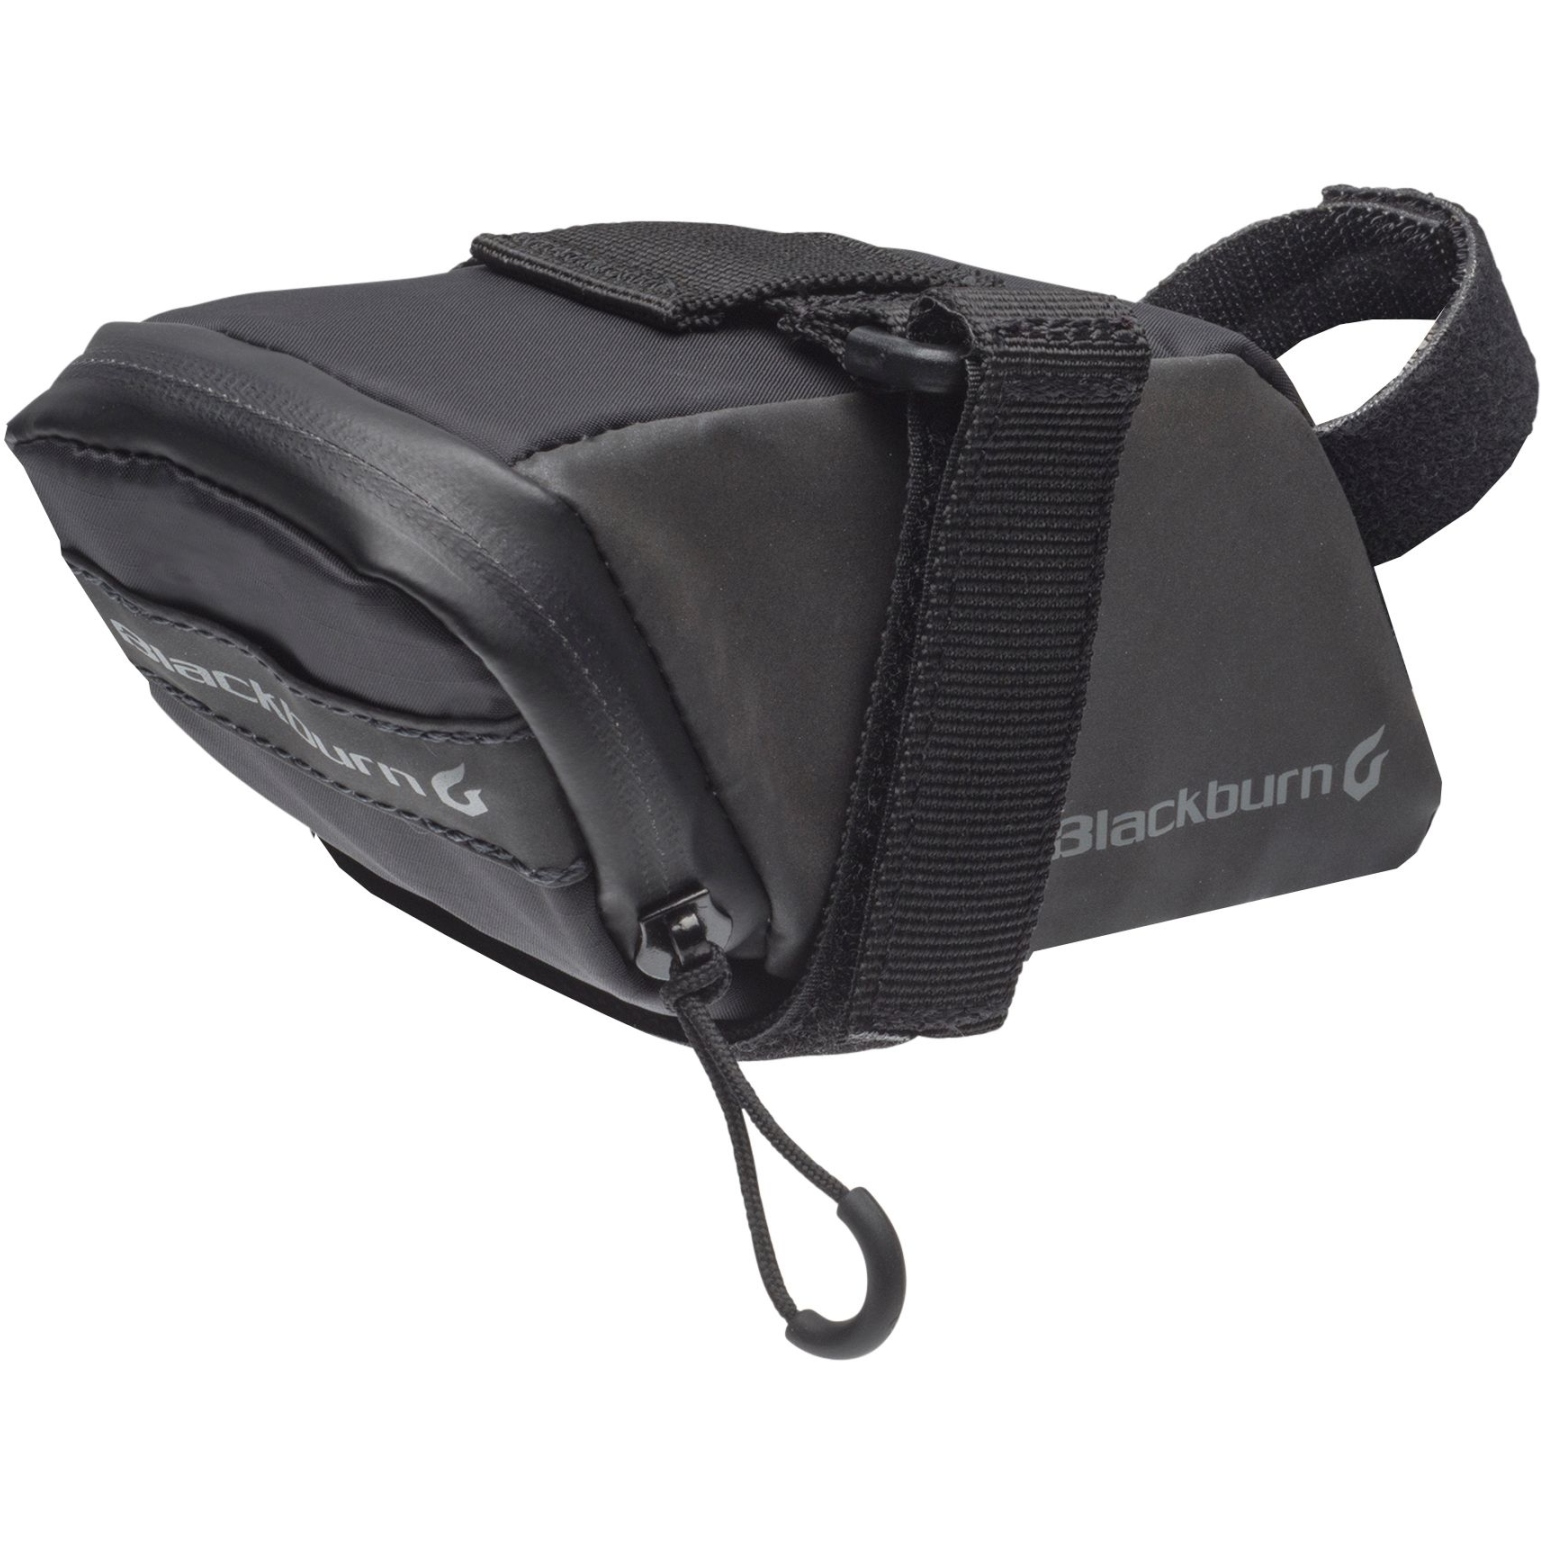 Productfoto van Blackburn Grid Small Seat Bag - black reflective